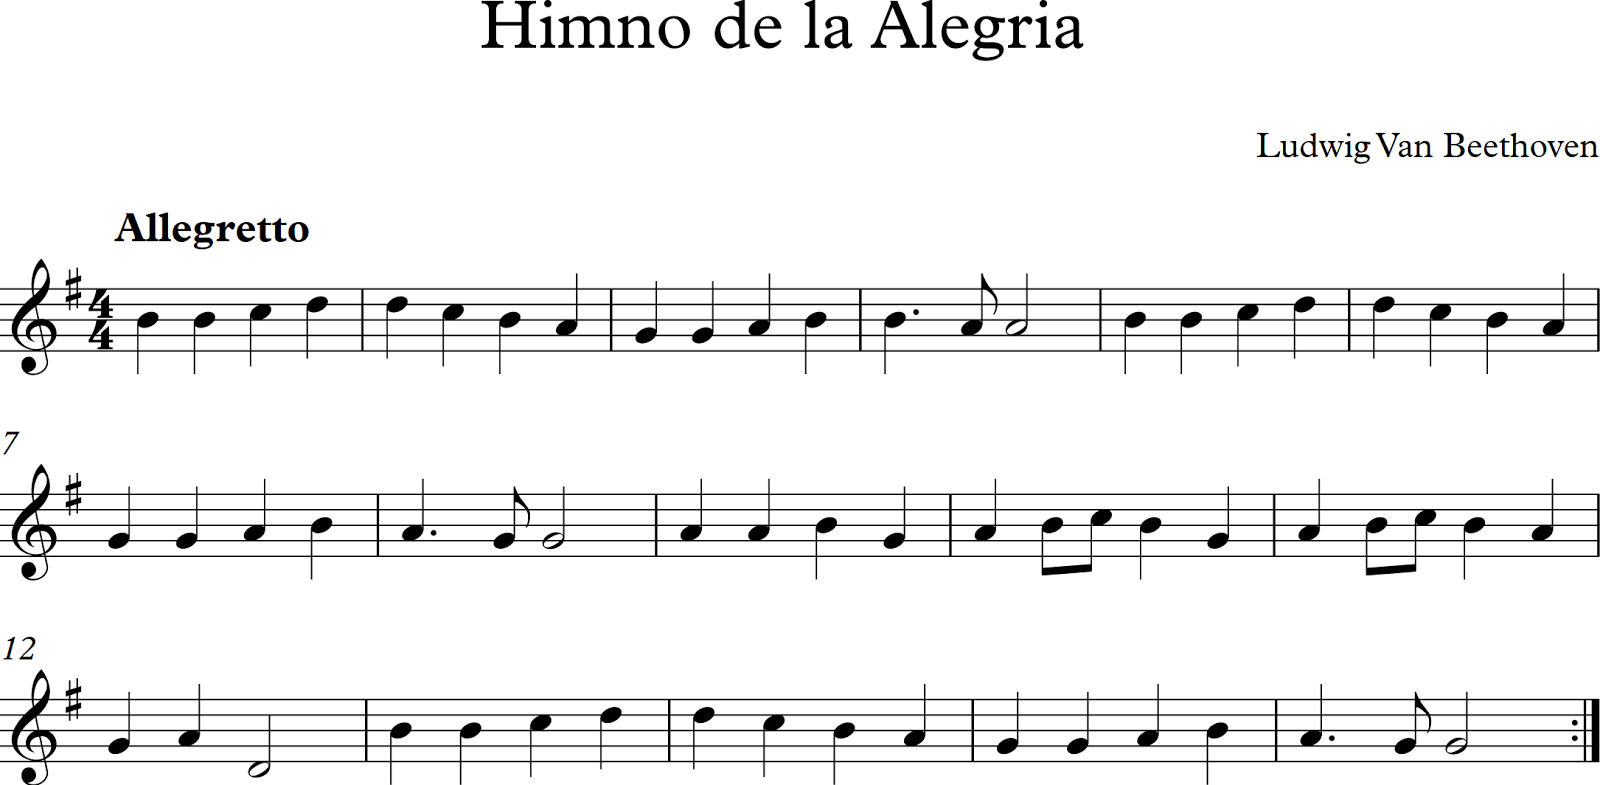 Partitura - Himno de Alegría, en Flauta